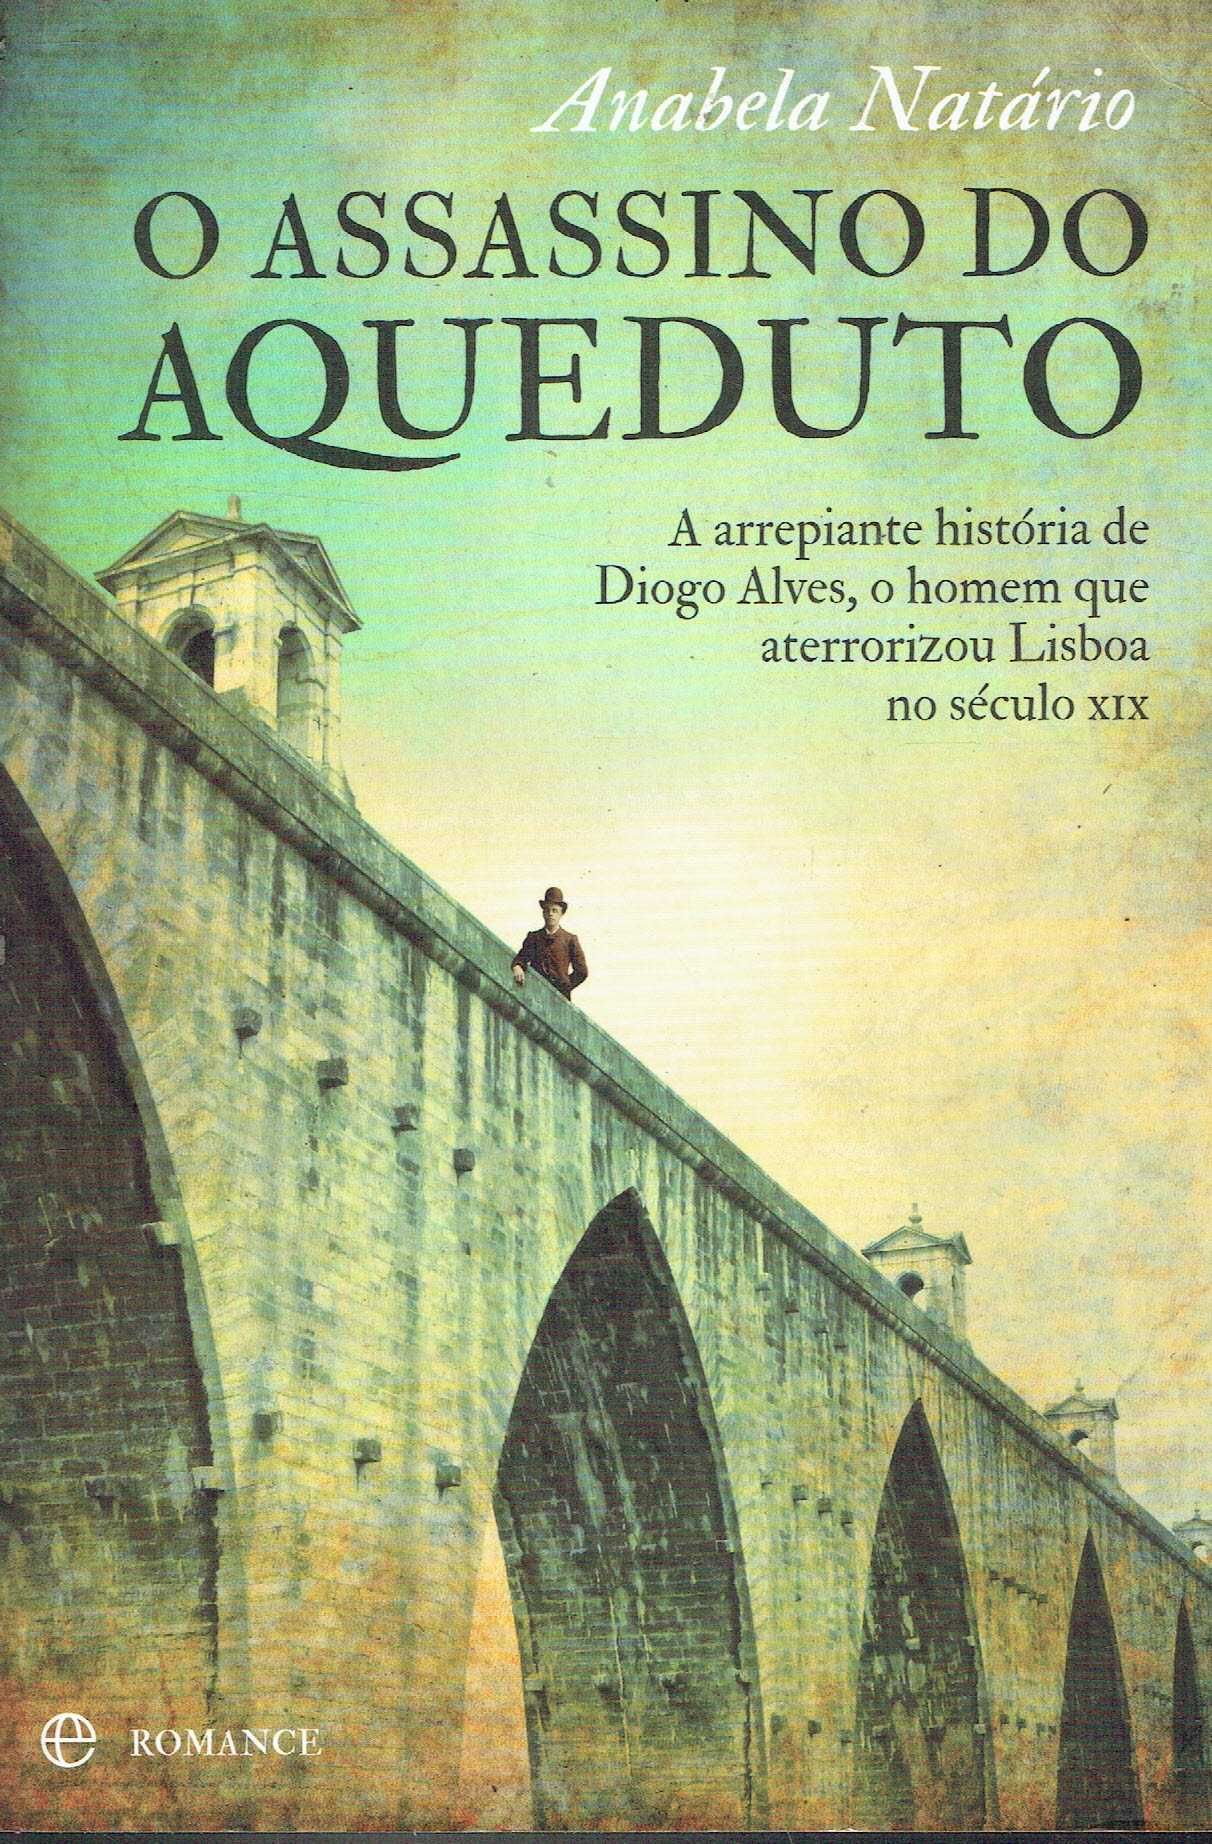 9249

O Assassino do Aqueduto
de Anabela Natário